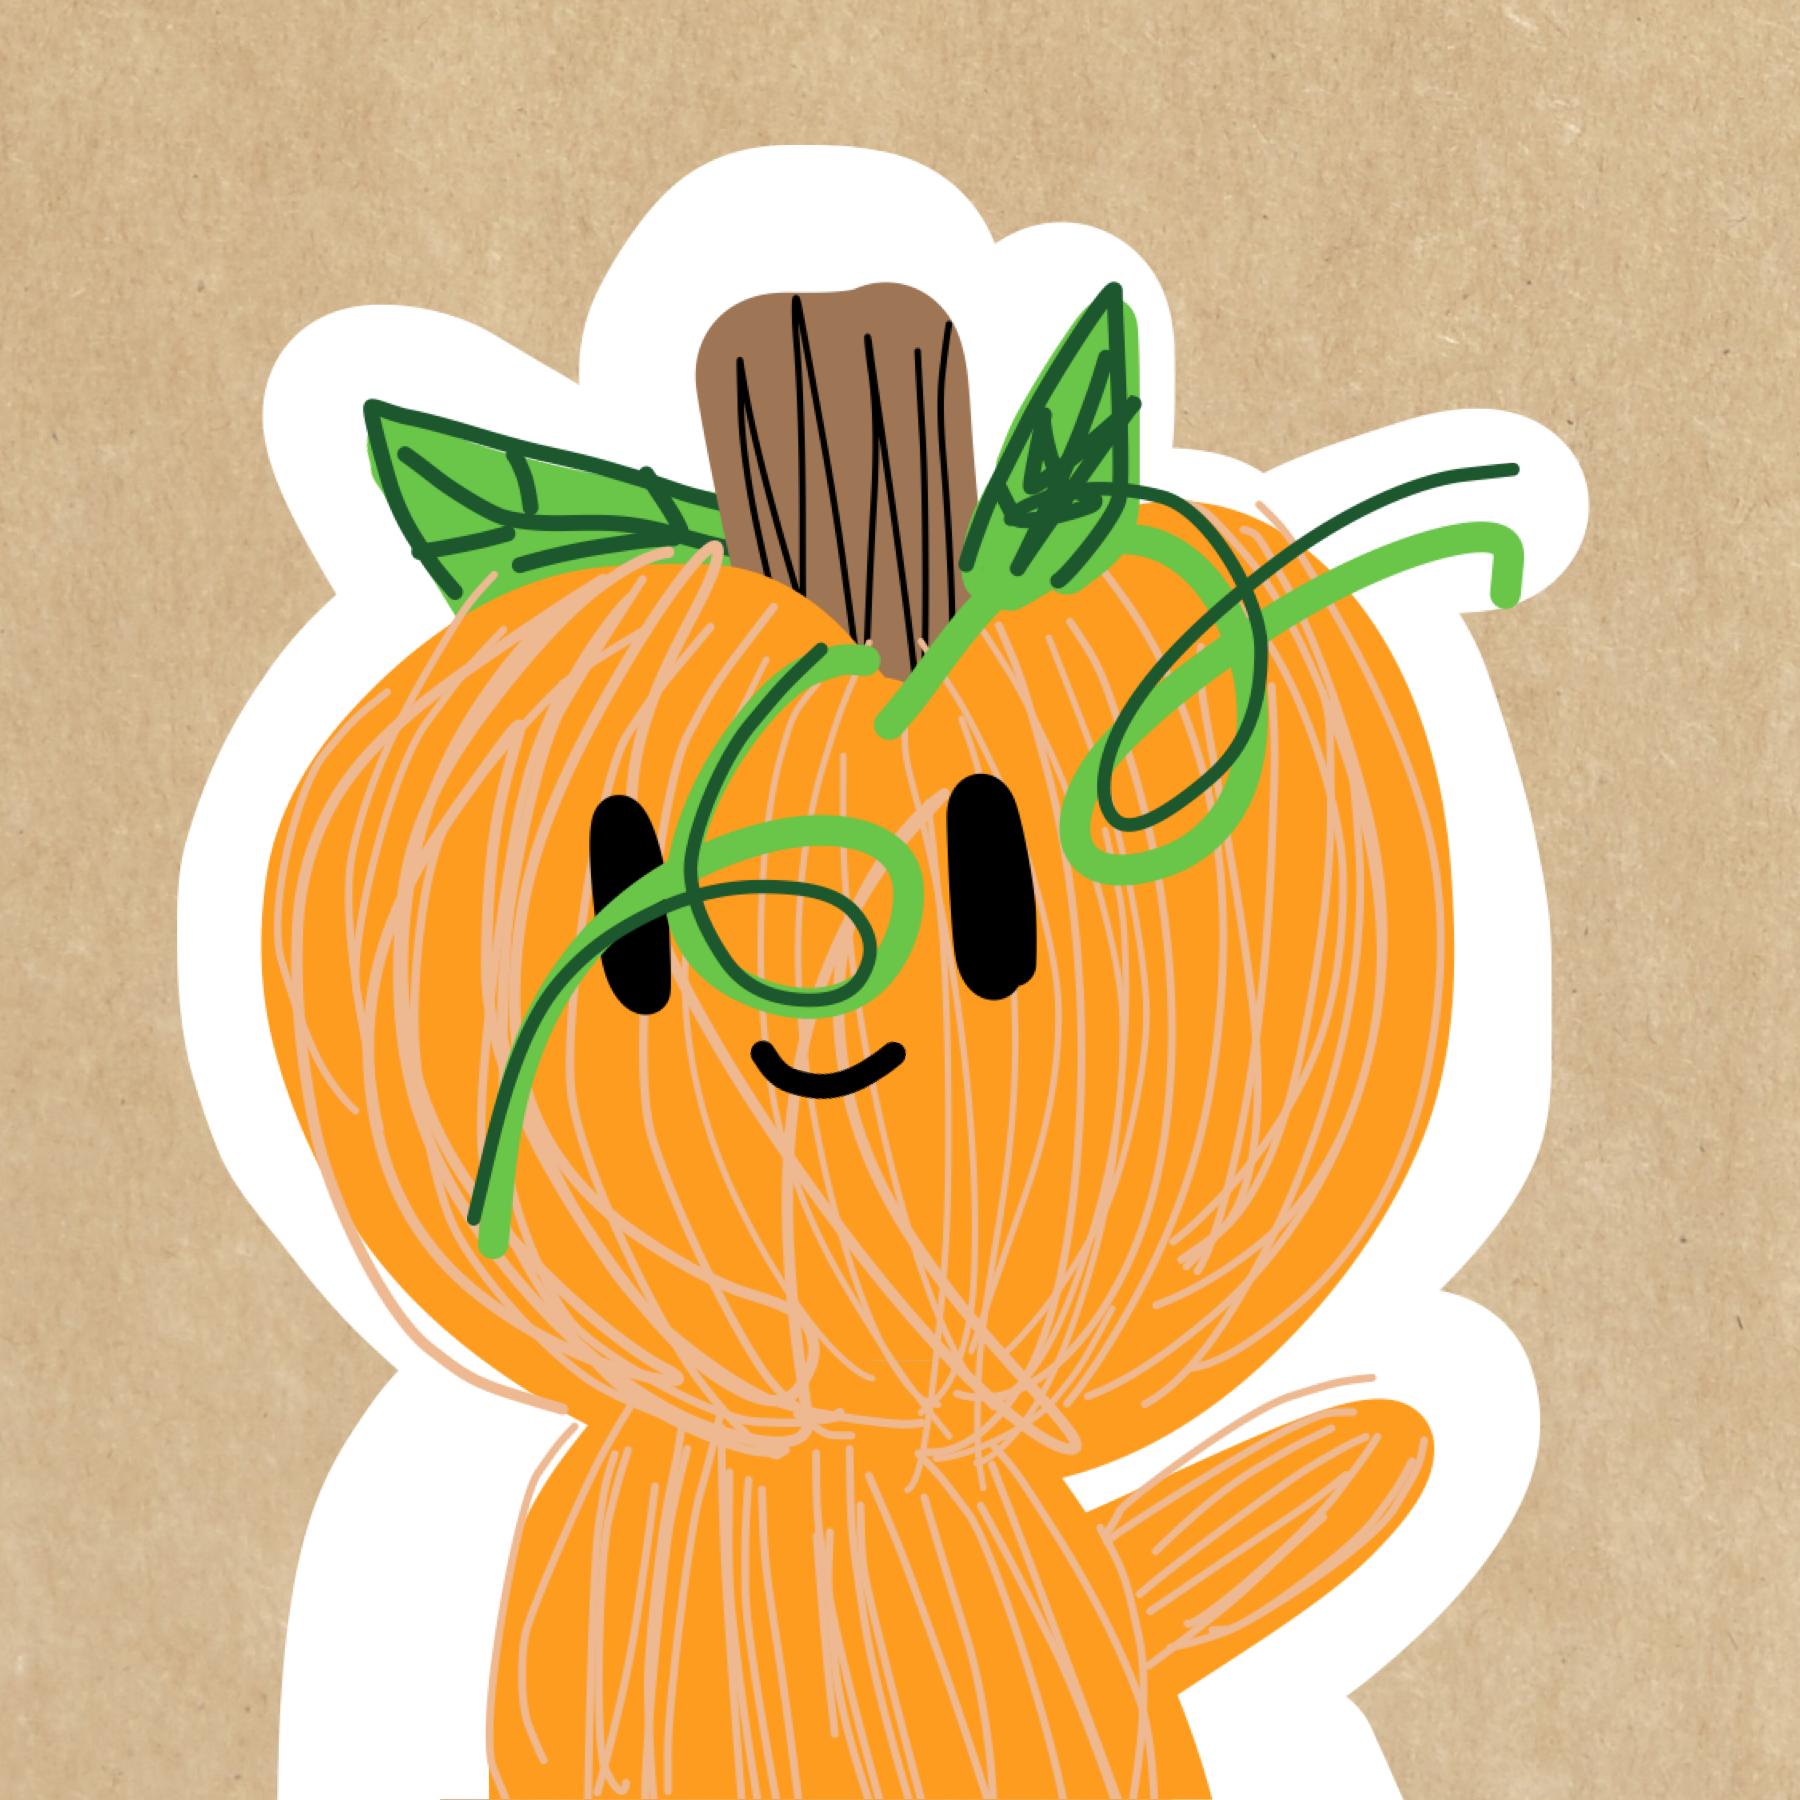 today’s word is pumpkin! so meet this little pumpkin boy:)